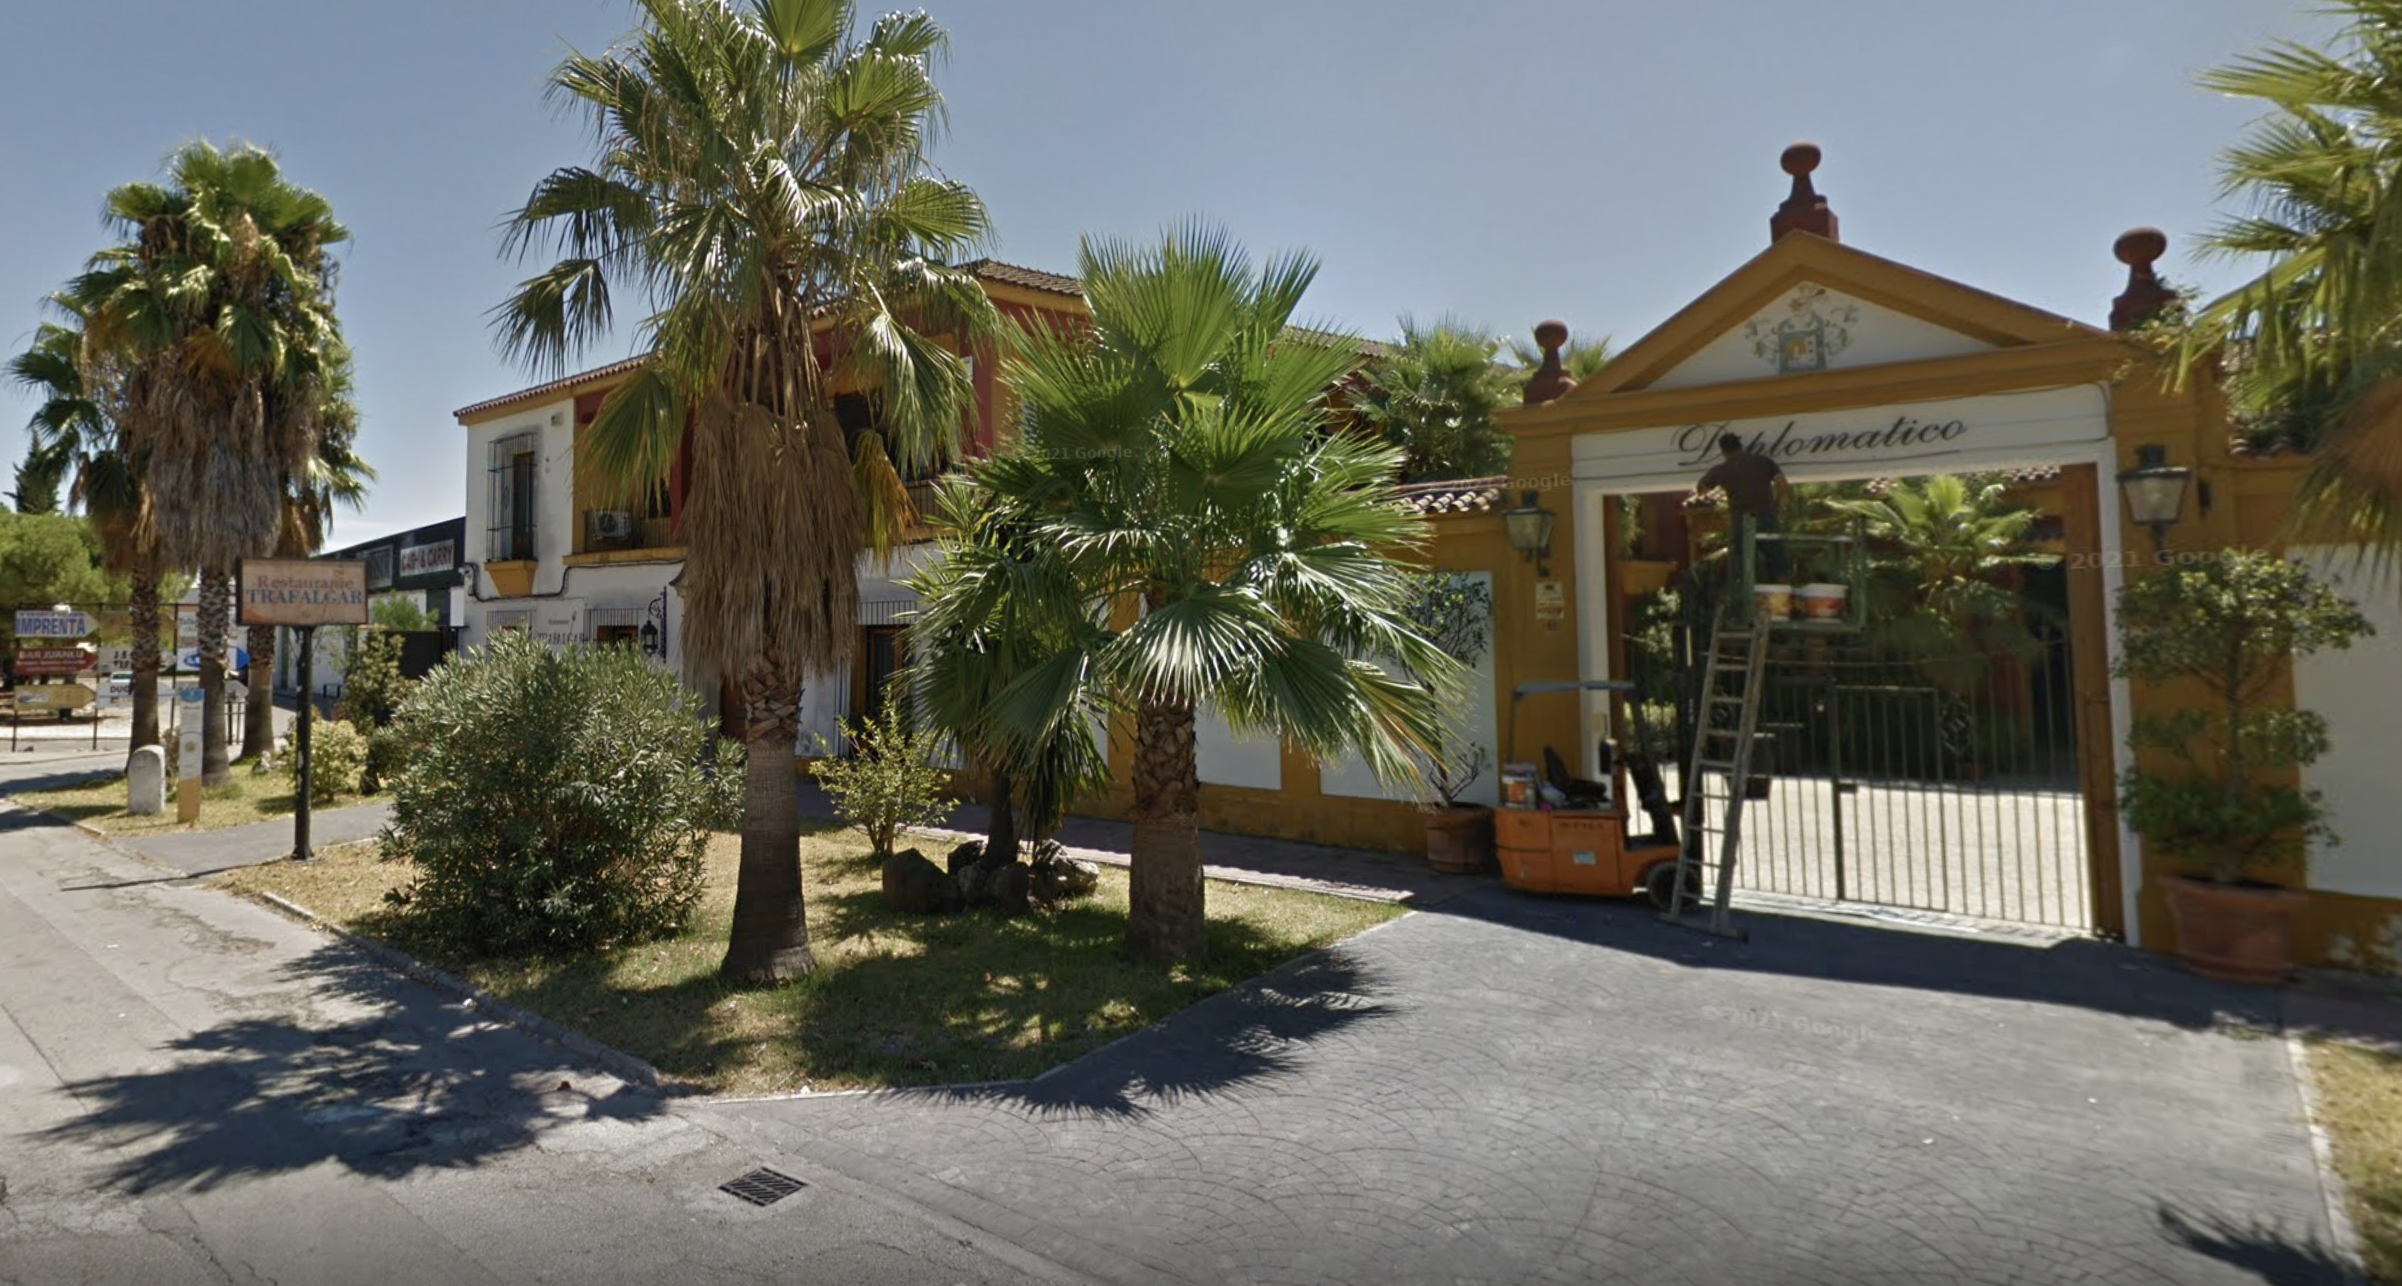 Acceso principal de Bodegas Diplomático, en el acceso a la carretera de Sanlúcar, en Jerez, en una imagen de Google Maps.